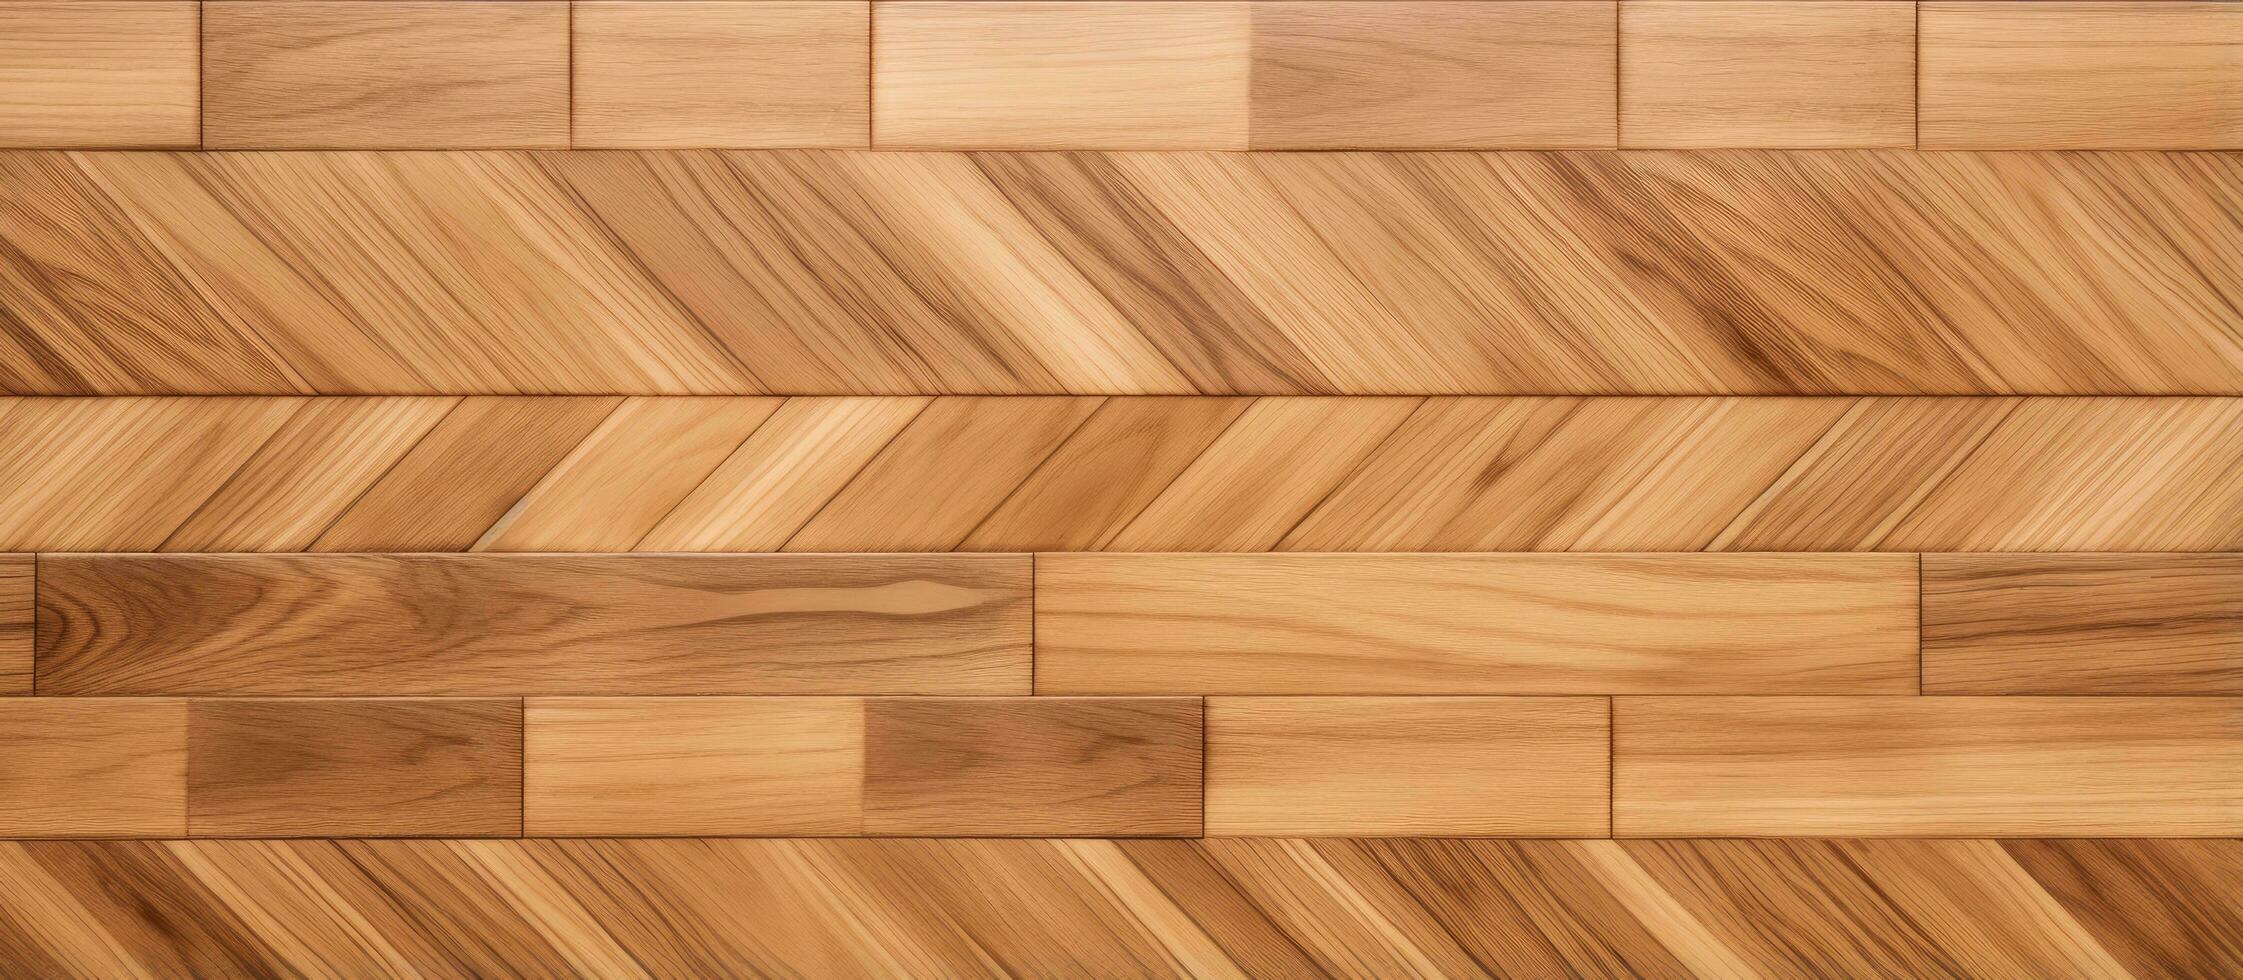 Contexte pour conception et présentations avec stratifié parquet planche une Naturel Matériel fabriqué de bois photo